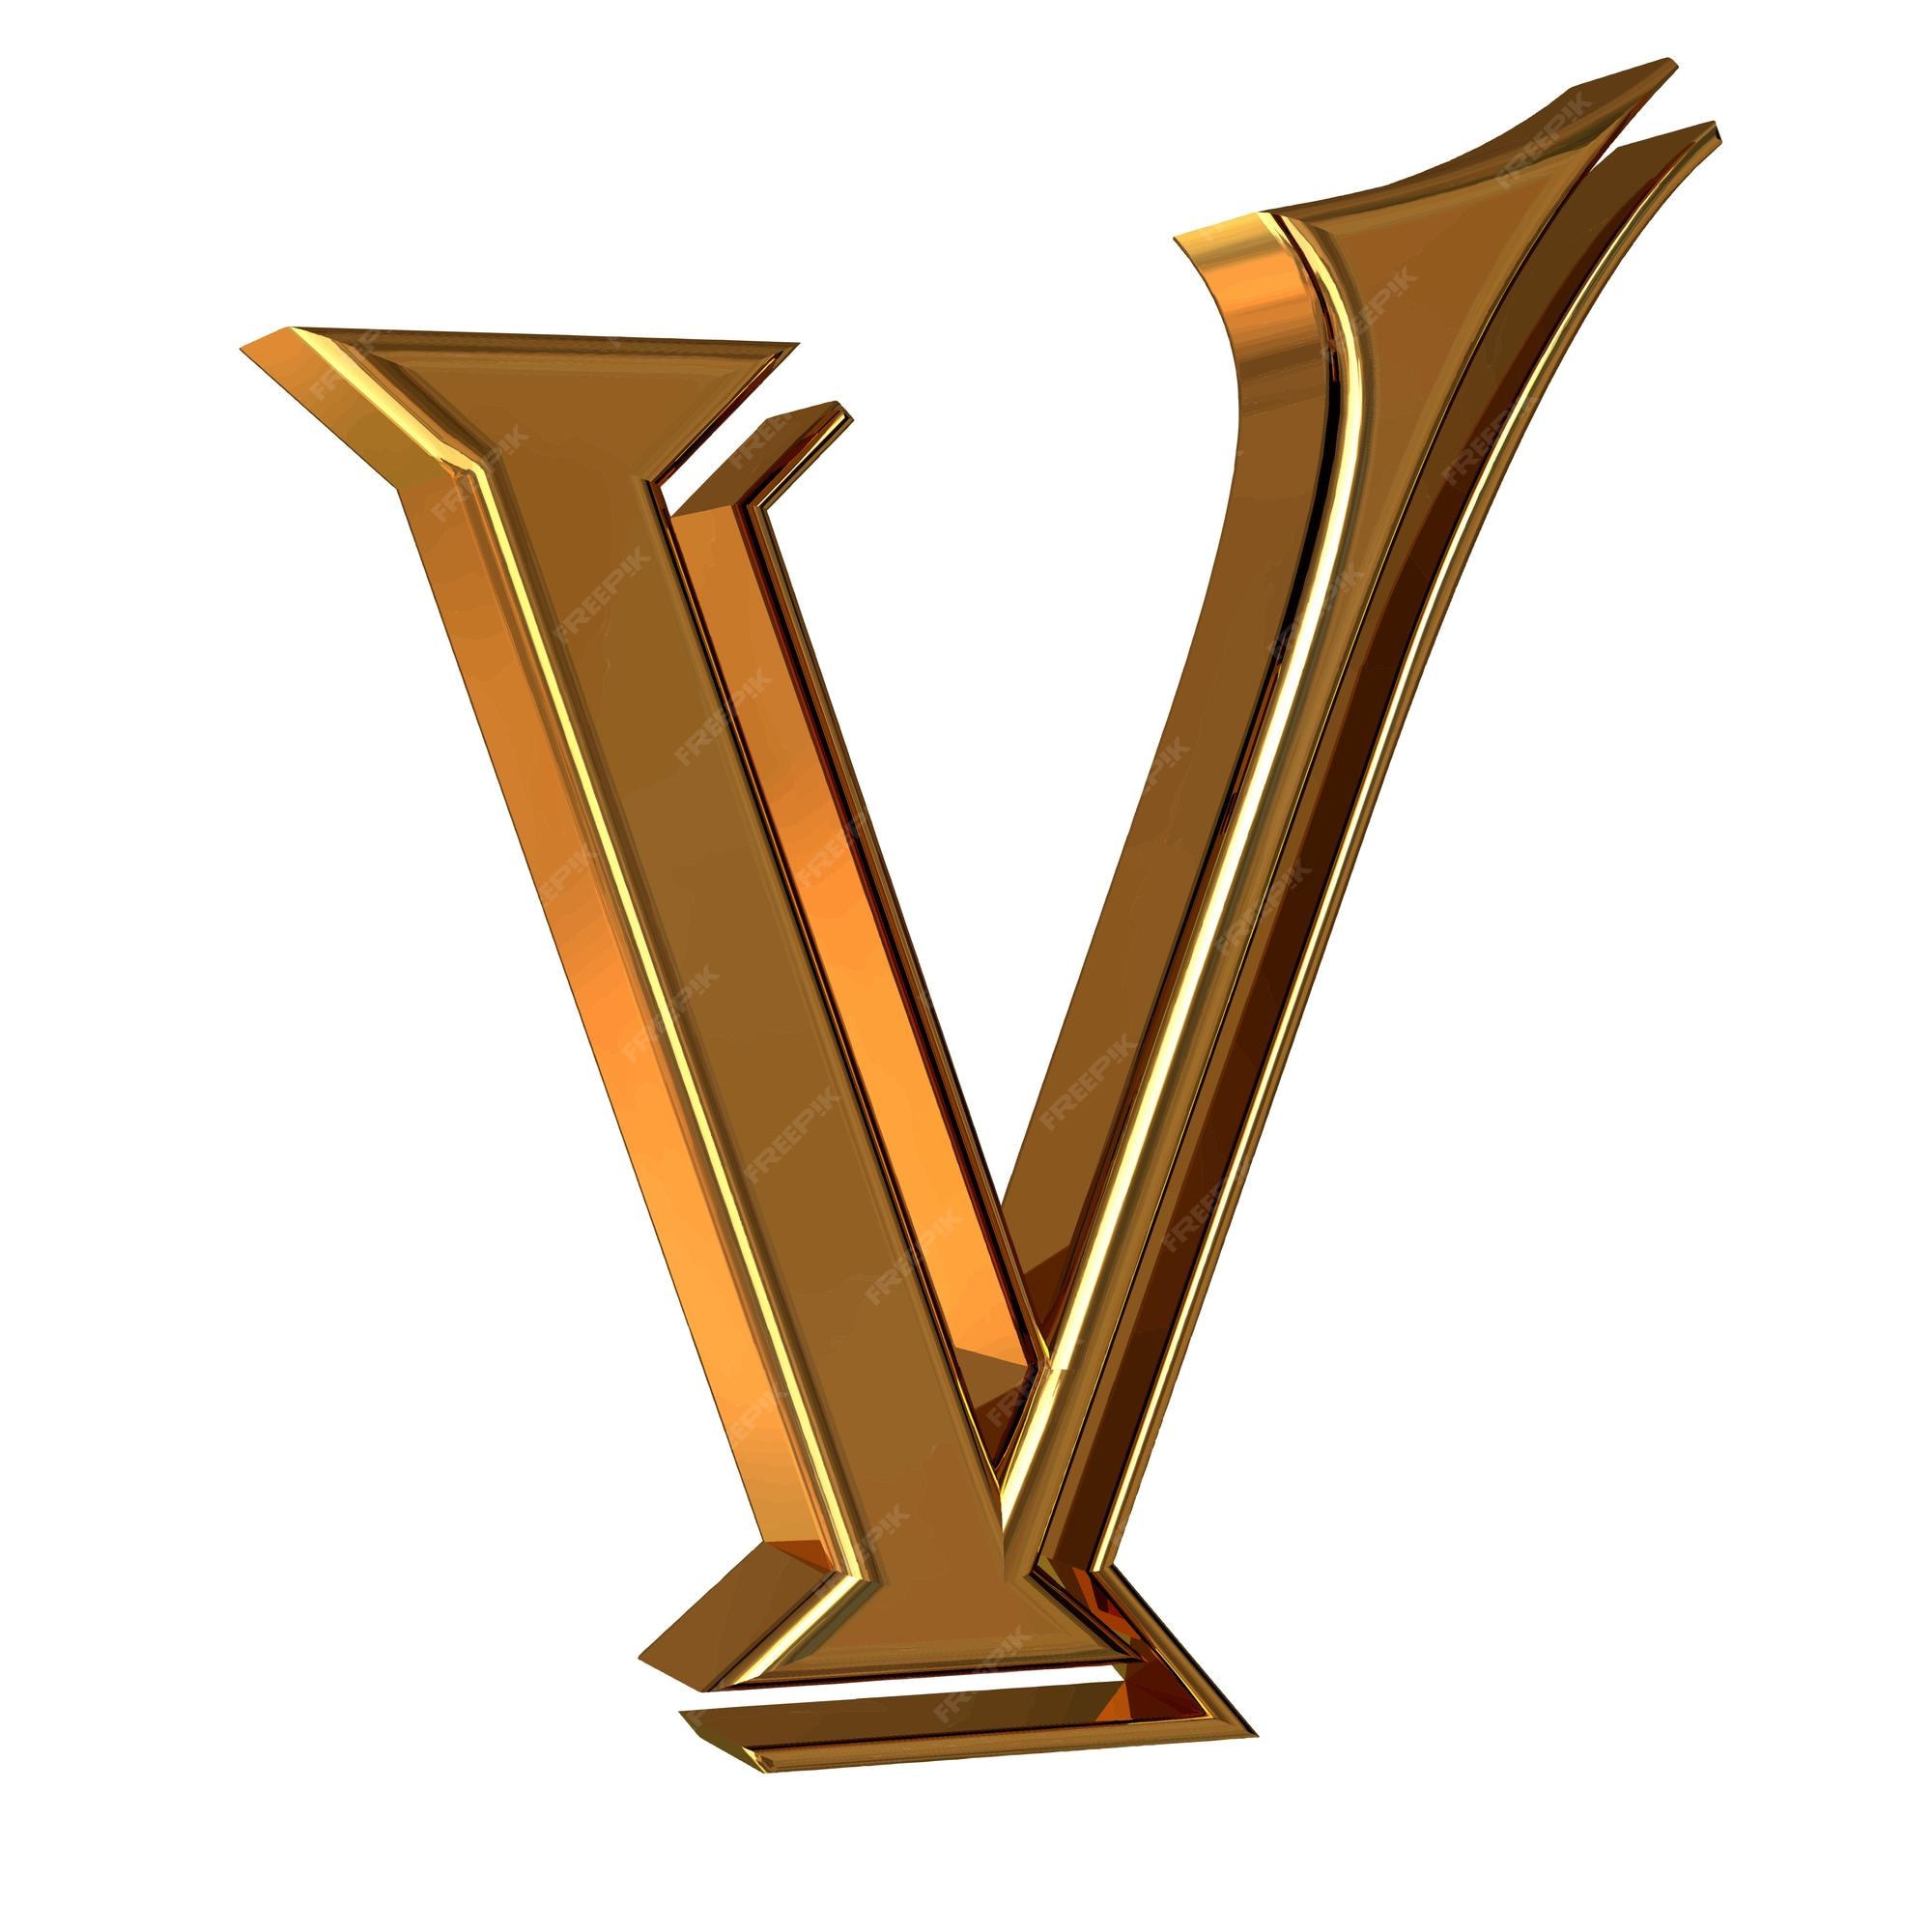 Premium Vector  Symbol 3d made of gold letter v